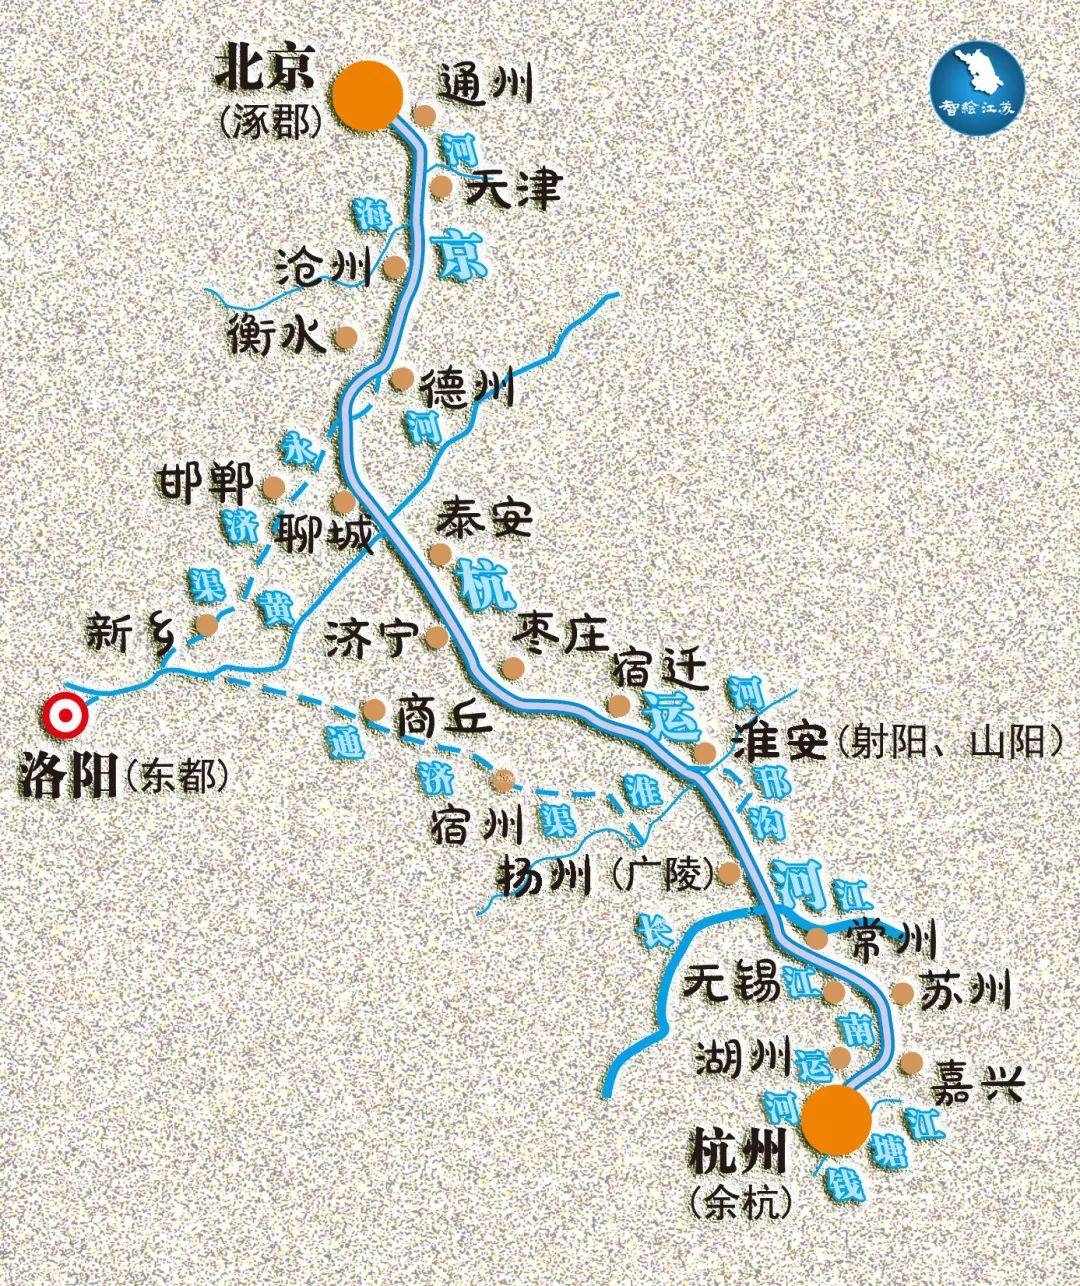 京杭大运河线路图片